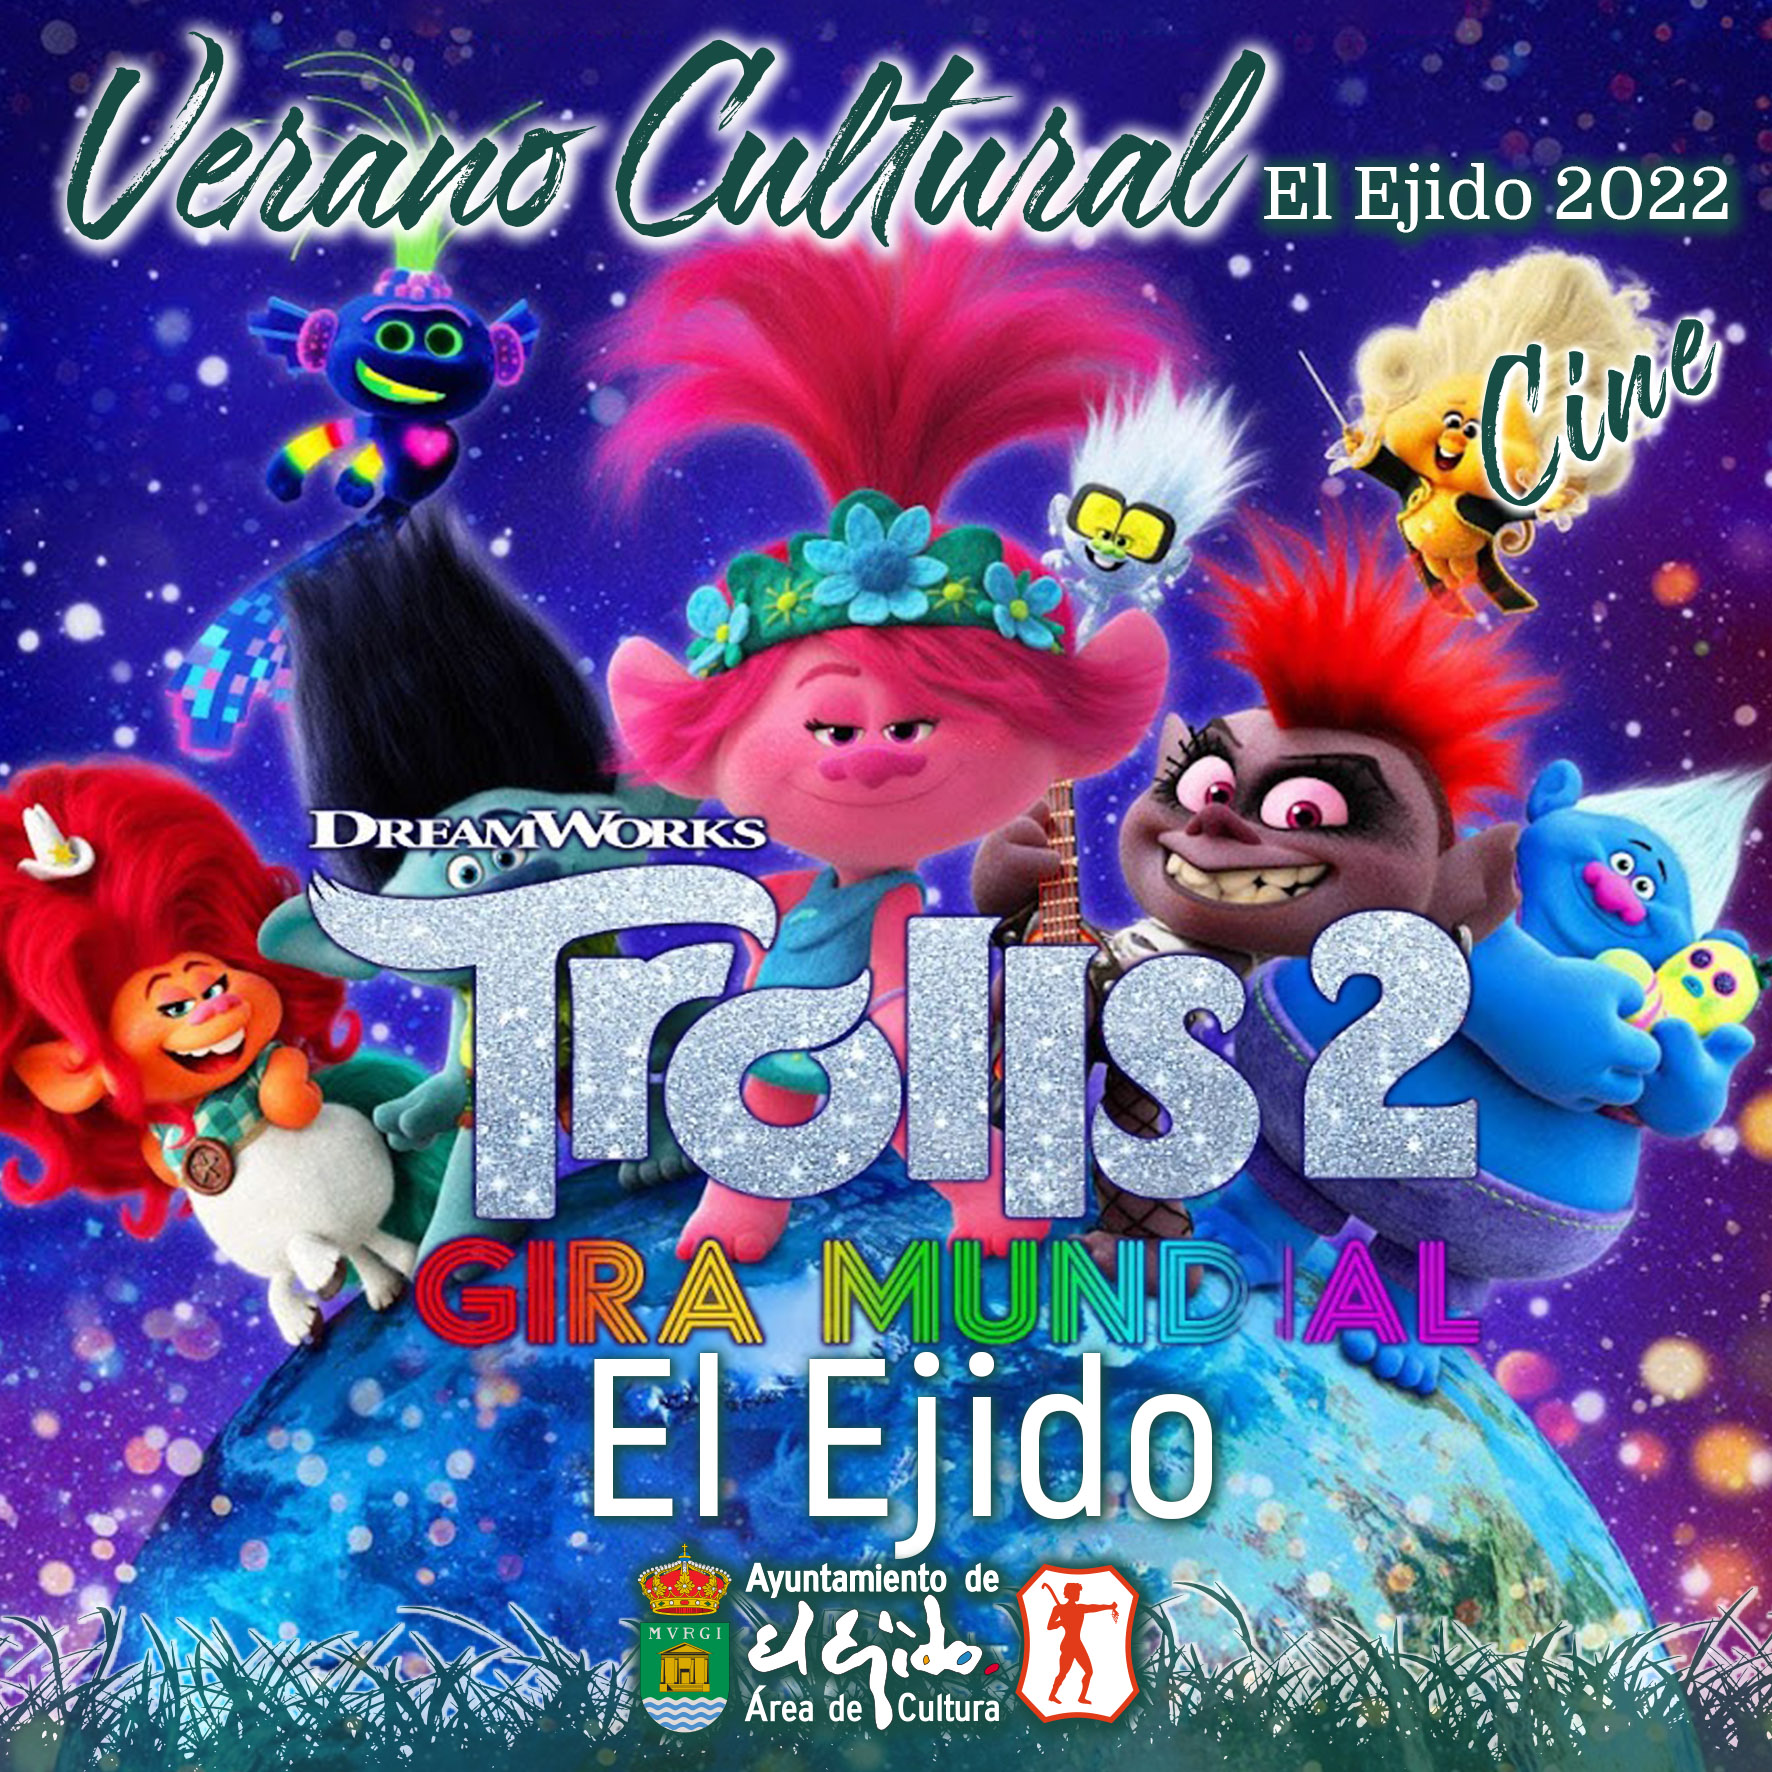 Verano Cultural 2022 de El Ejido – Cine – El Ejido – Trolls 2 gira mundial